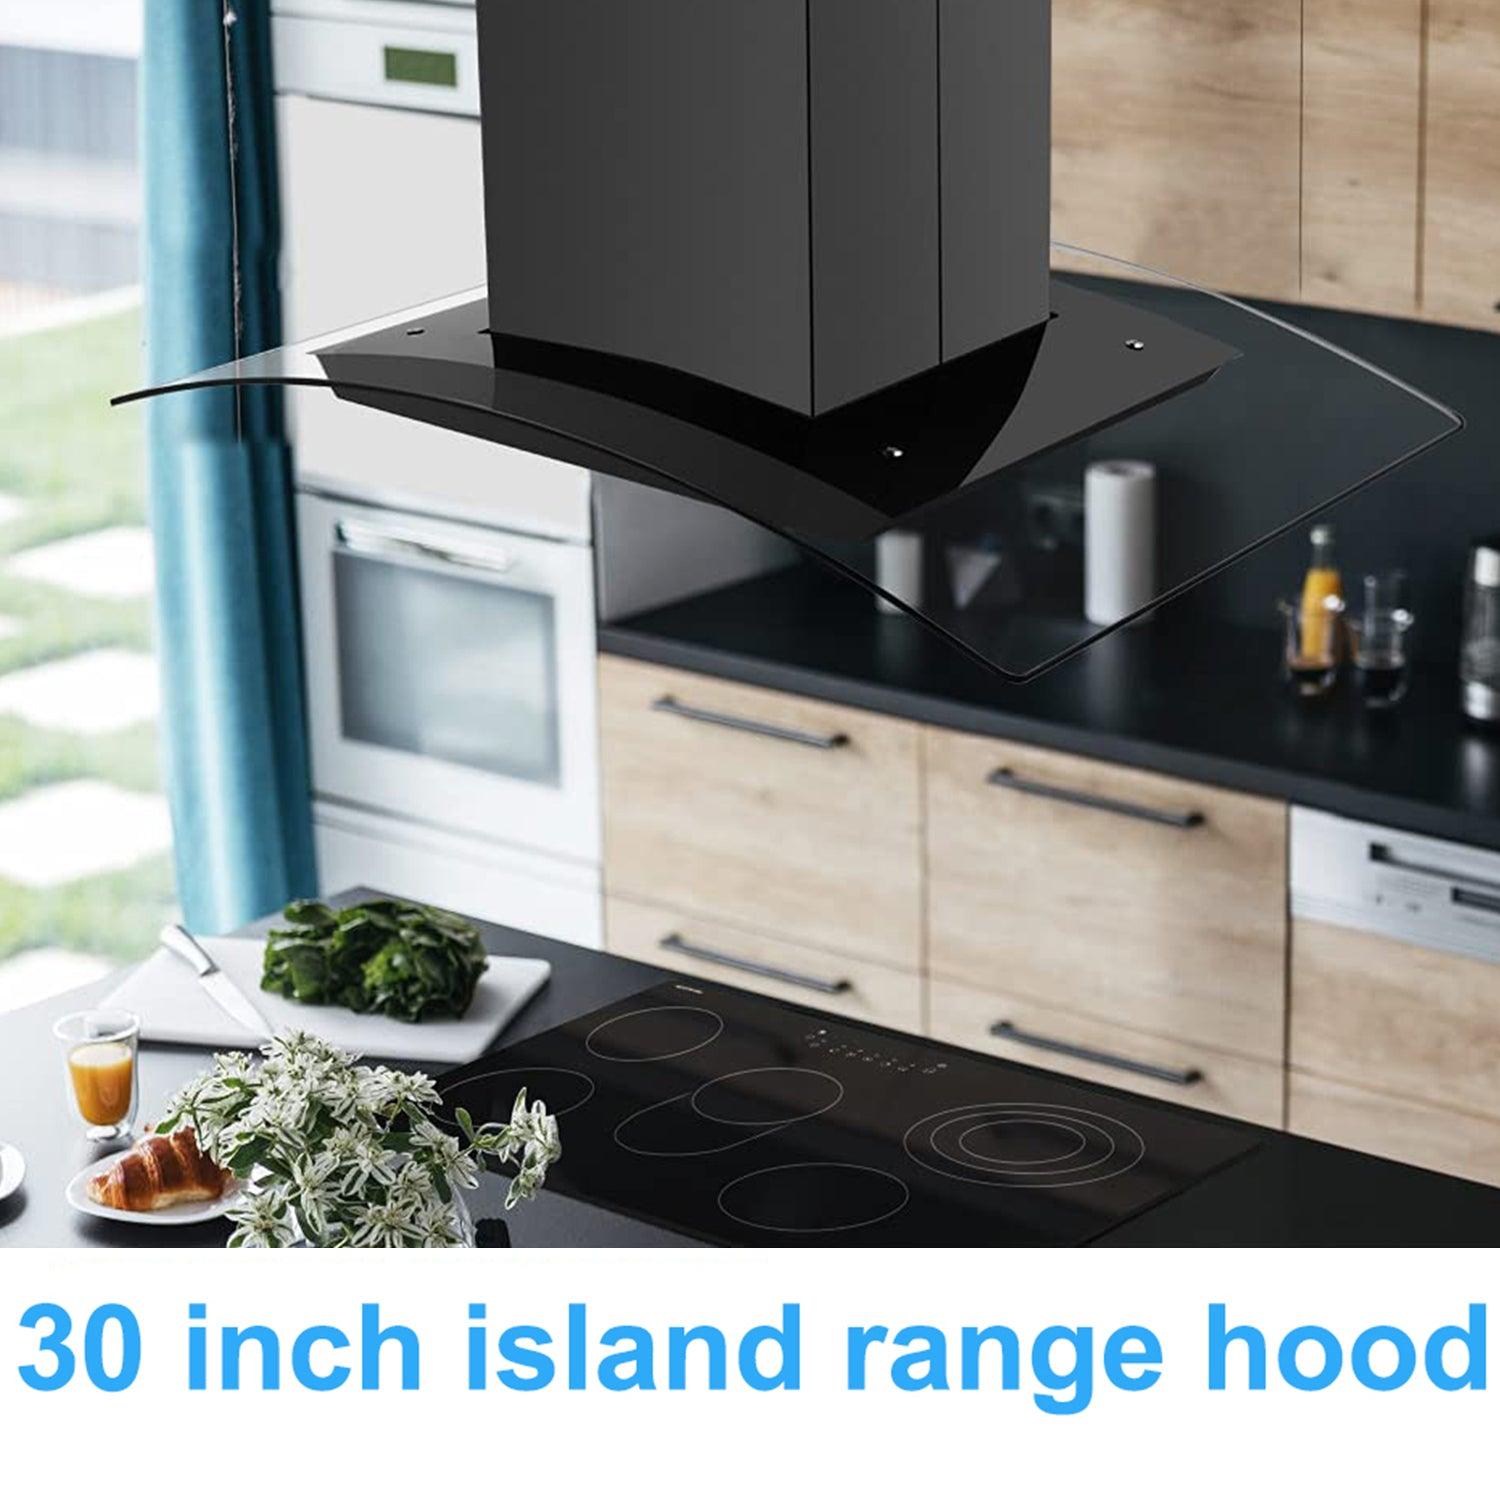 Tieasy Island Range Hood 30 inch Range Hood Black 700 CFM 3 Speed Fan Touch Panel